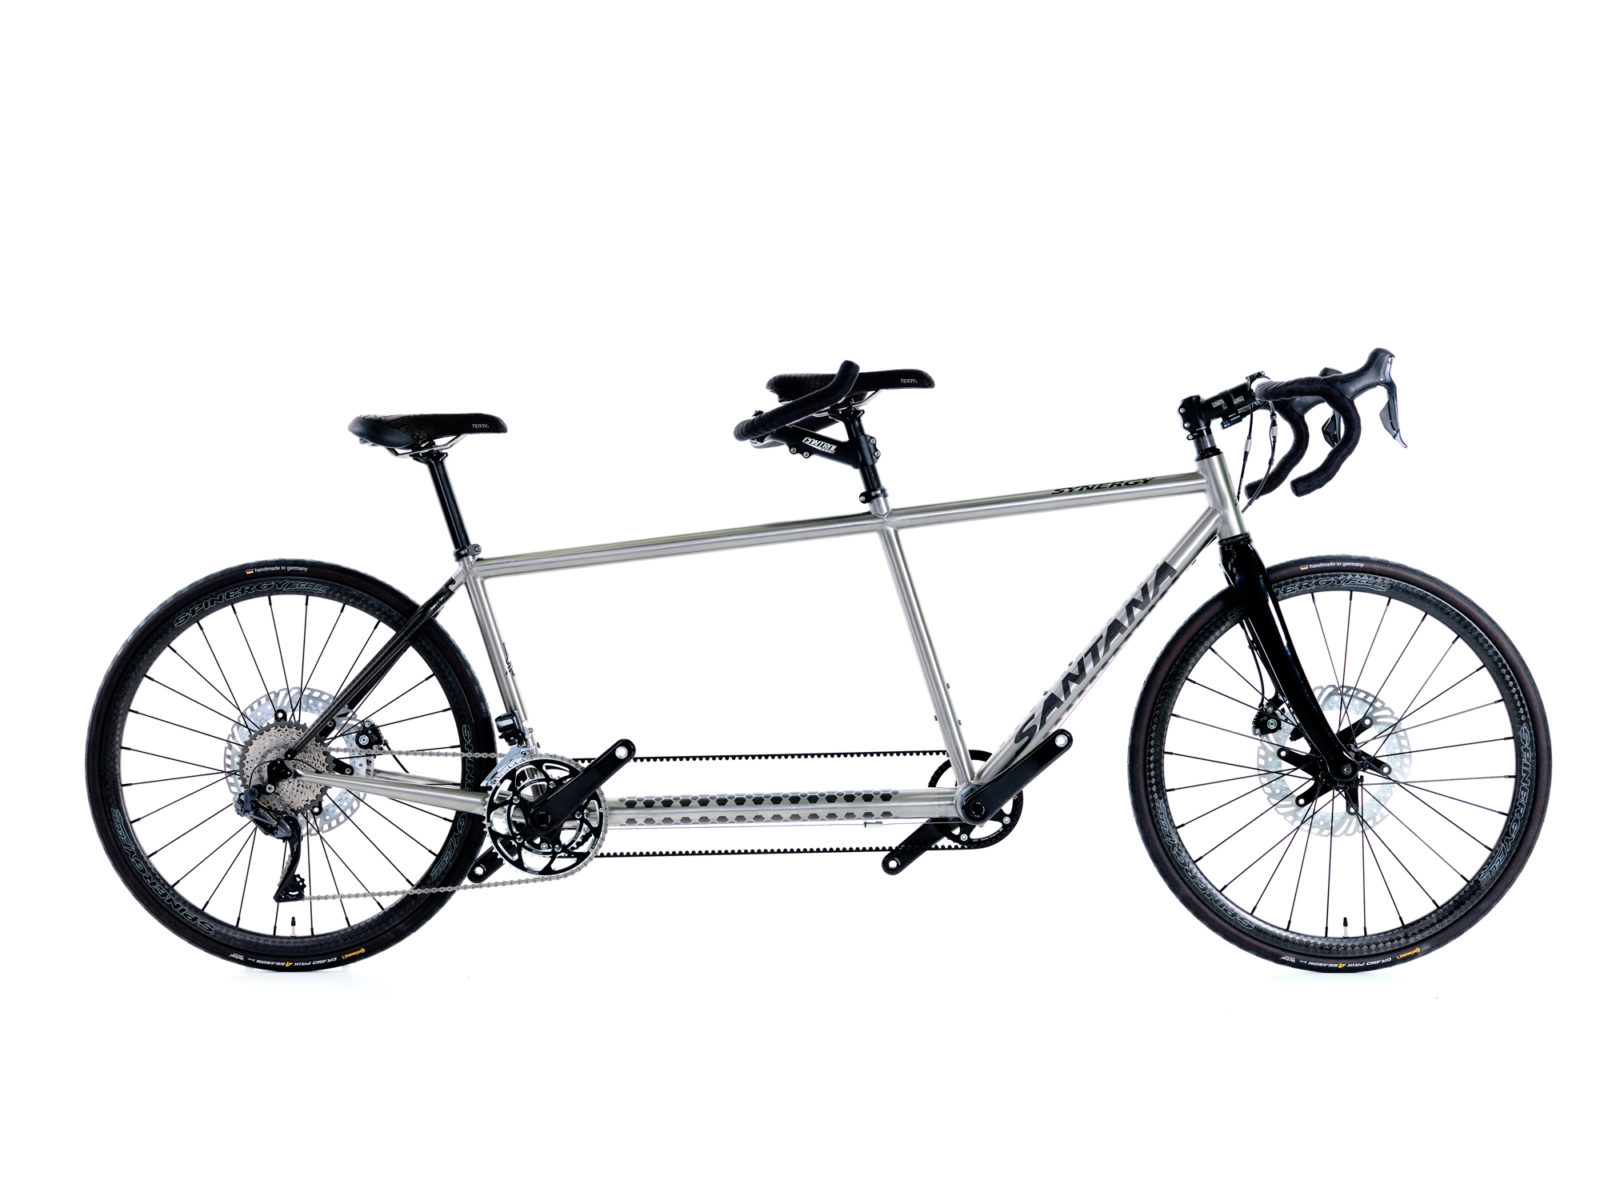 Santana Tandem Bicycles, Tandem Bike Manufacturers